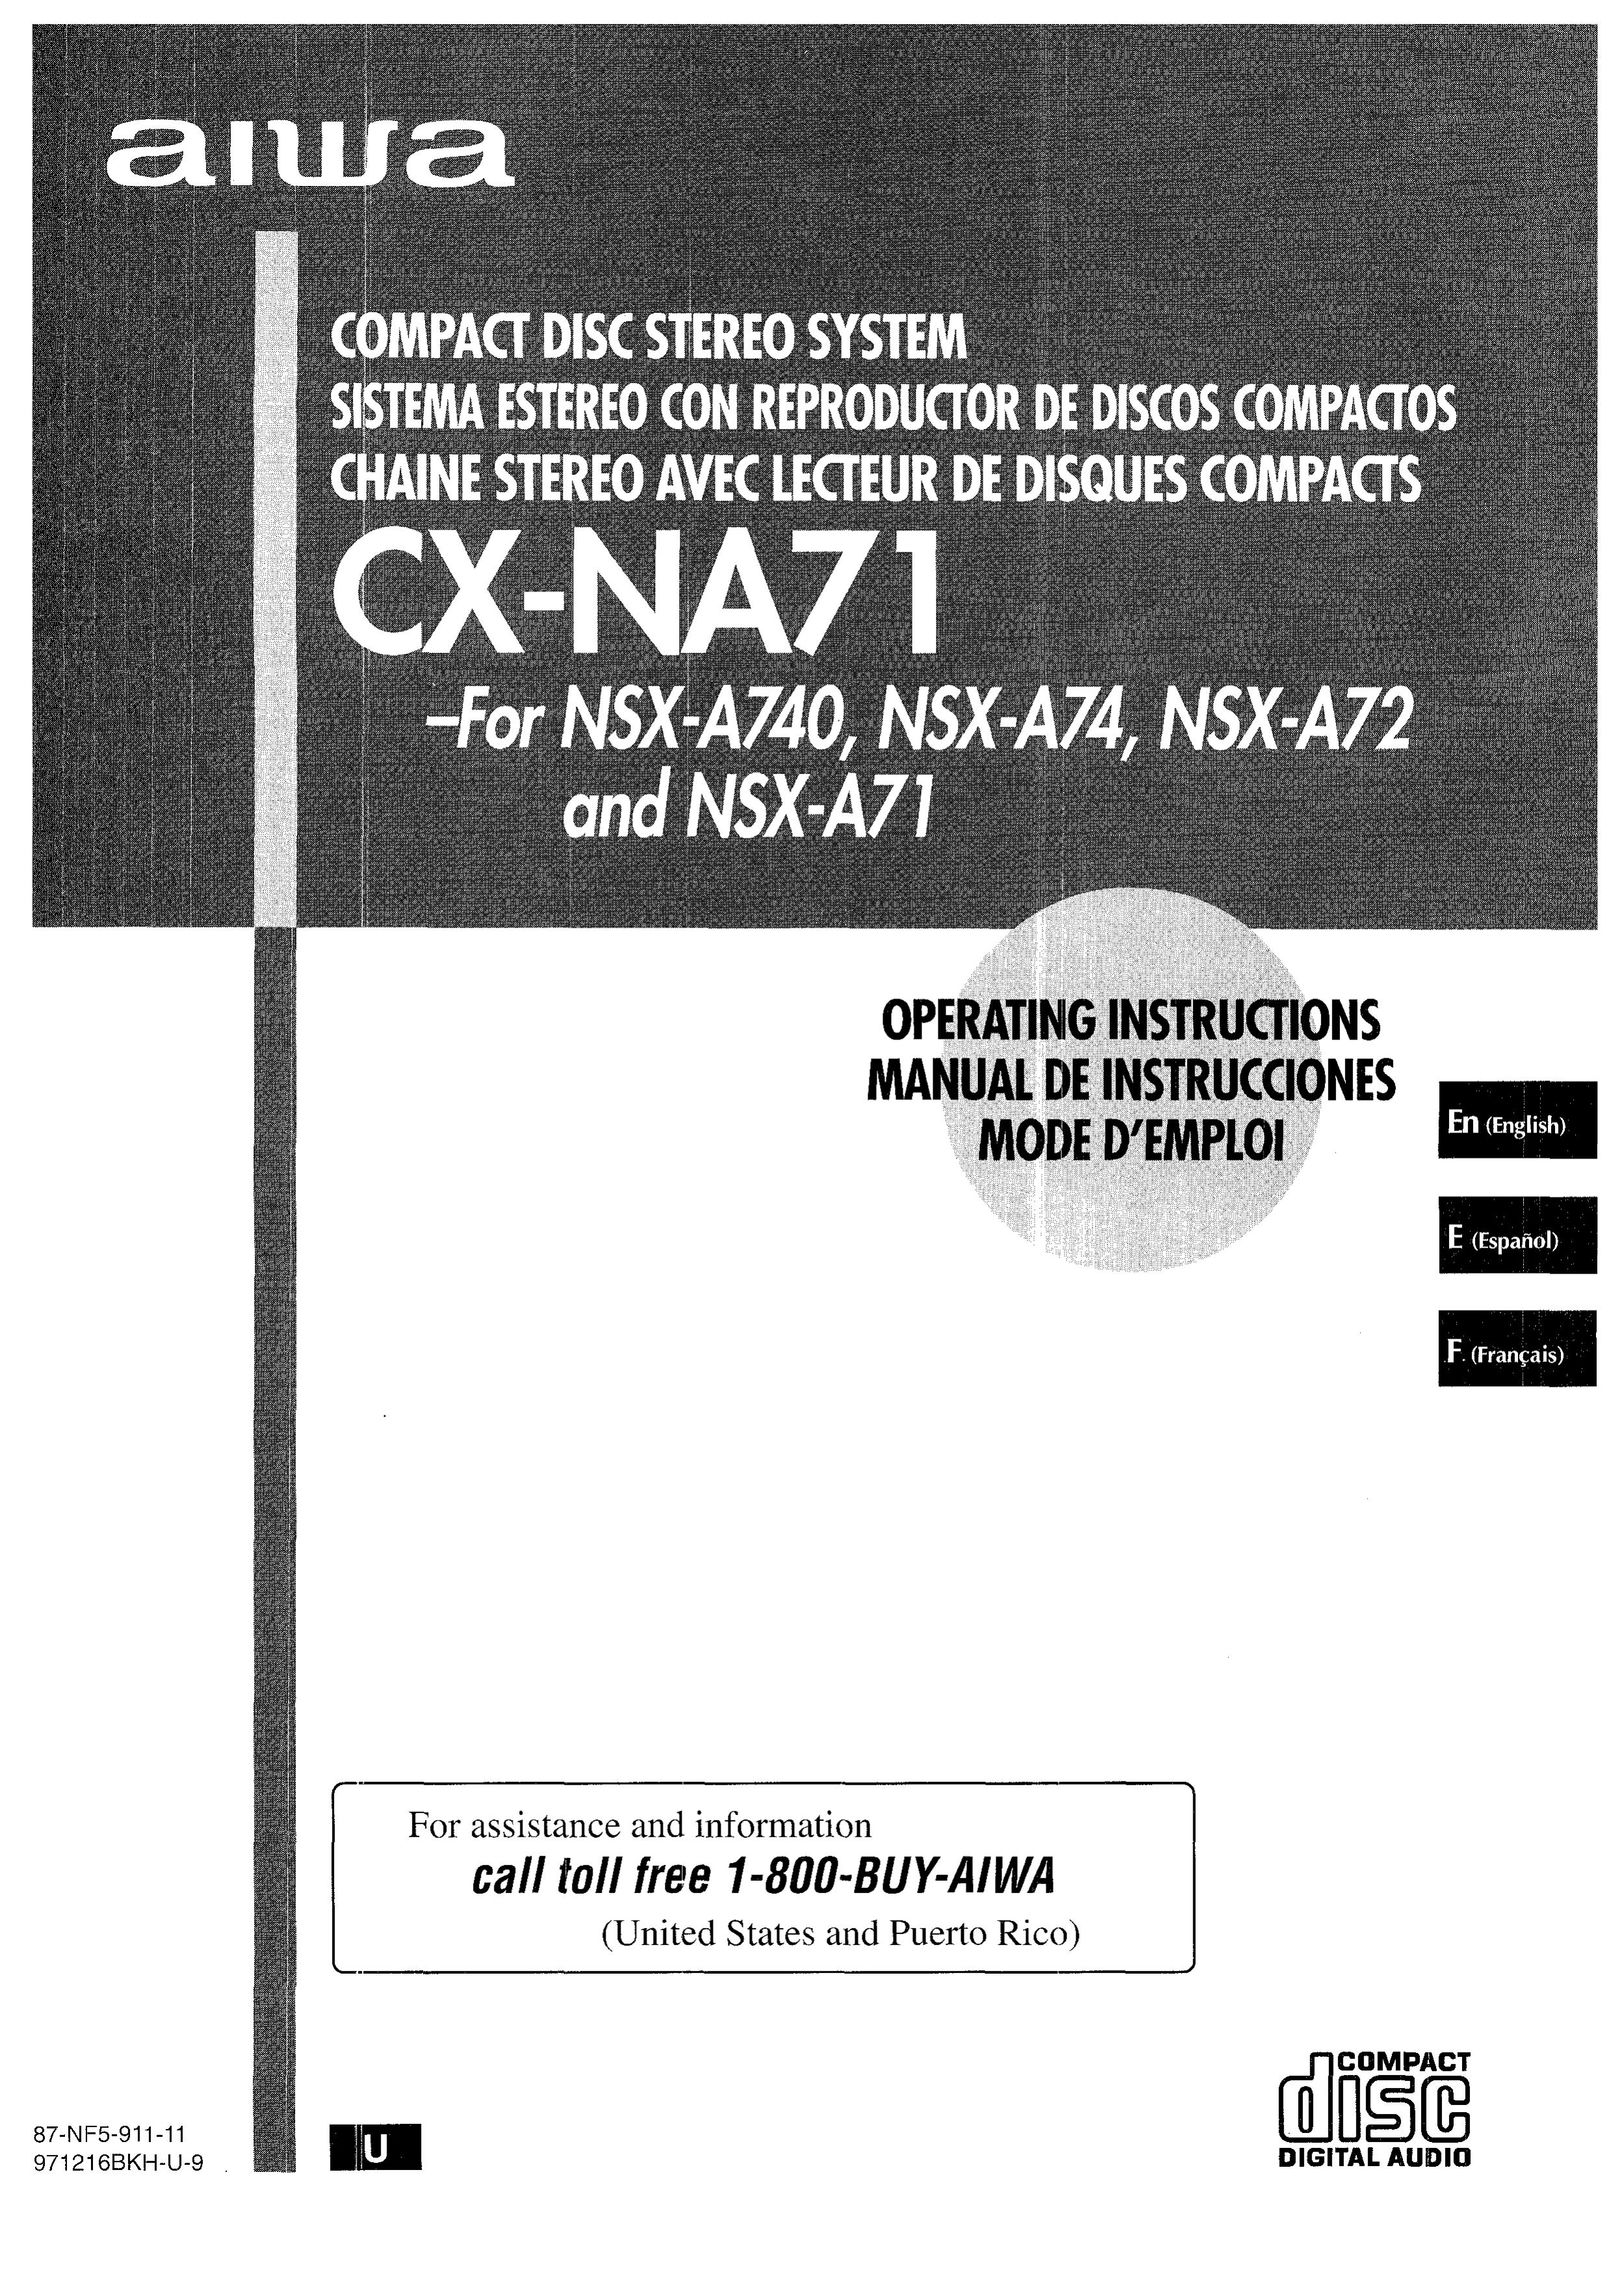 Aiwa CX-NA71 CD Player User Manual